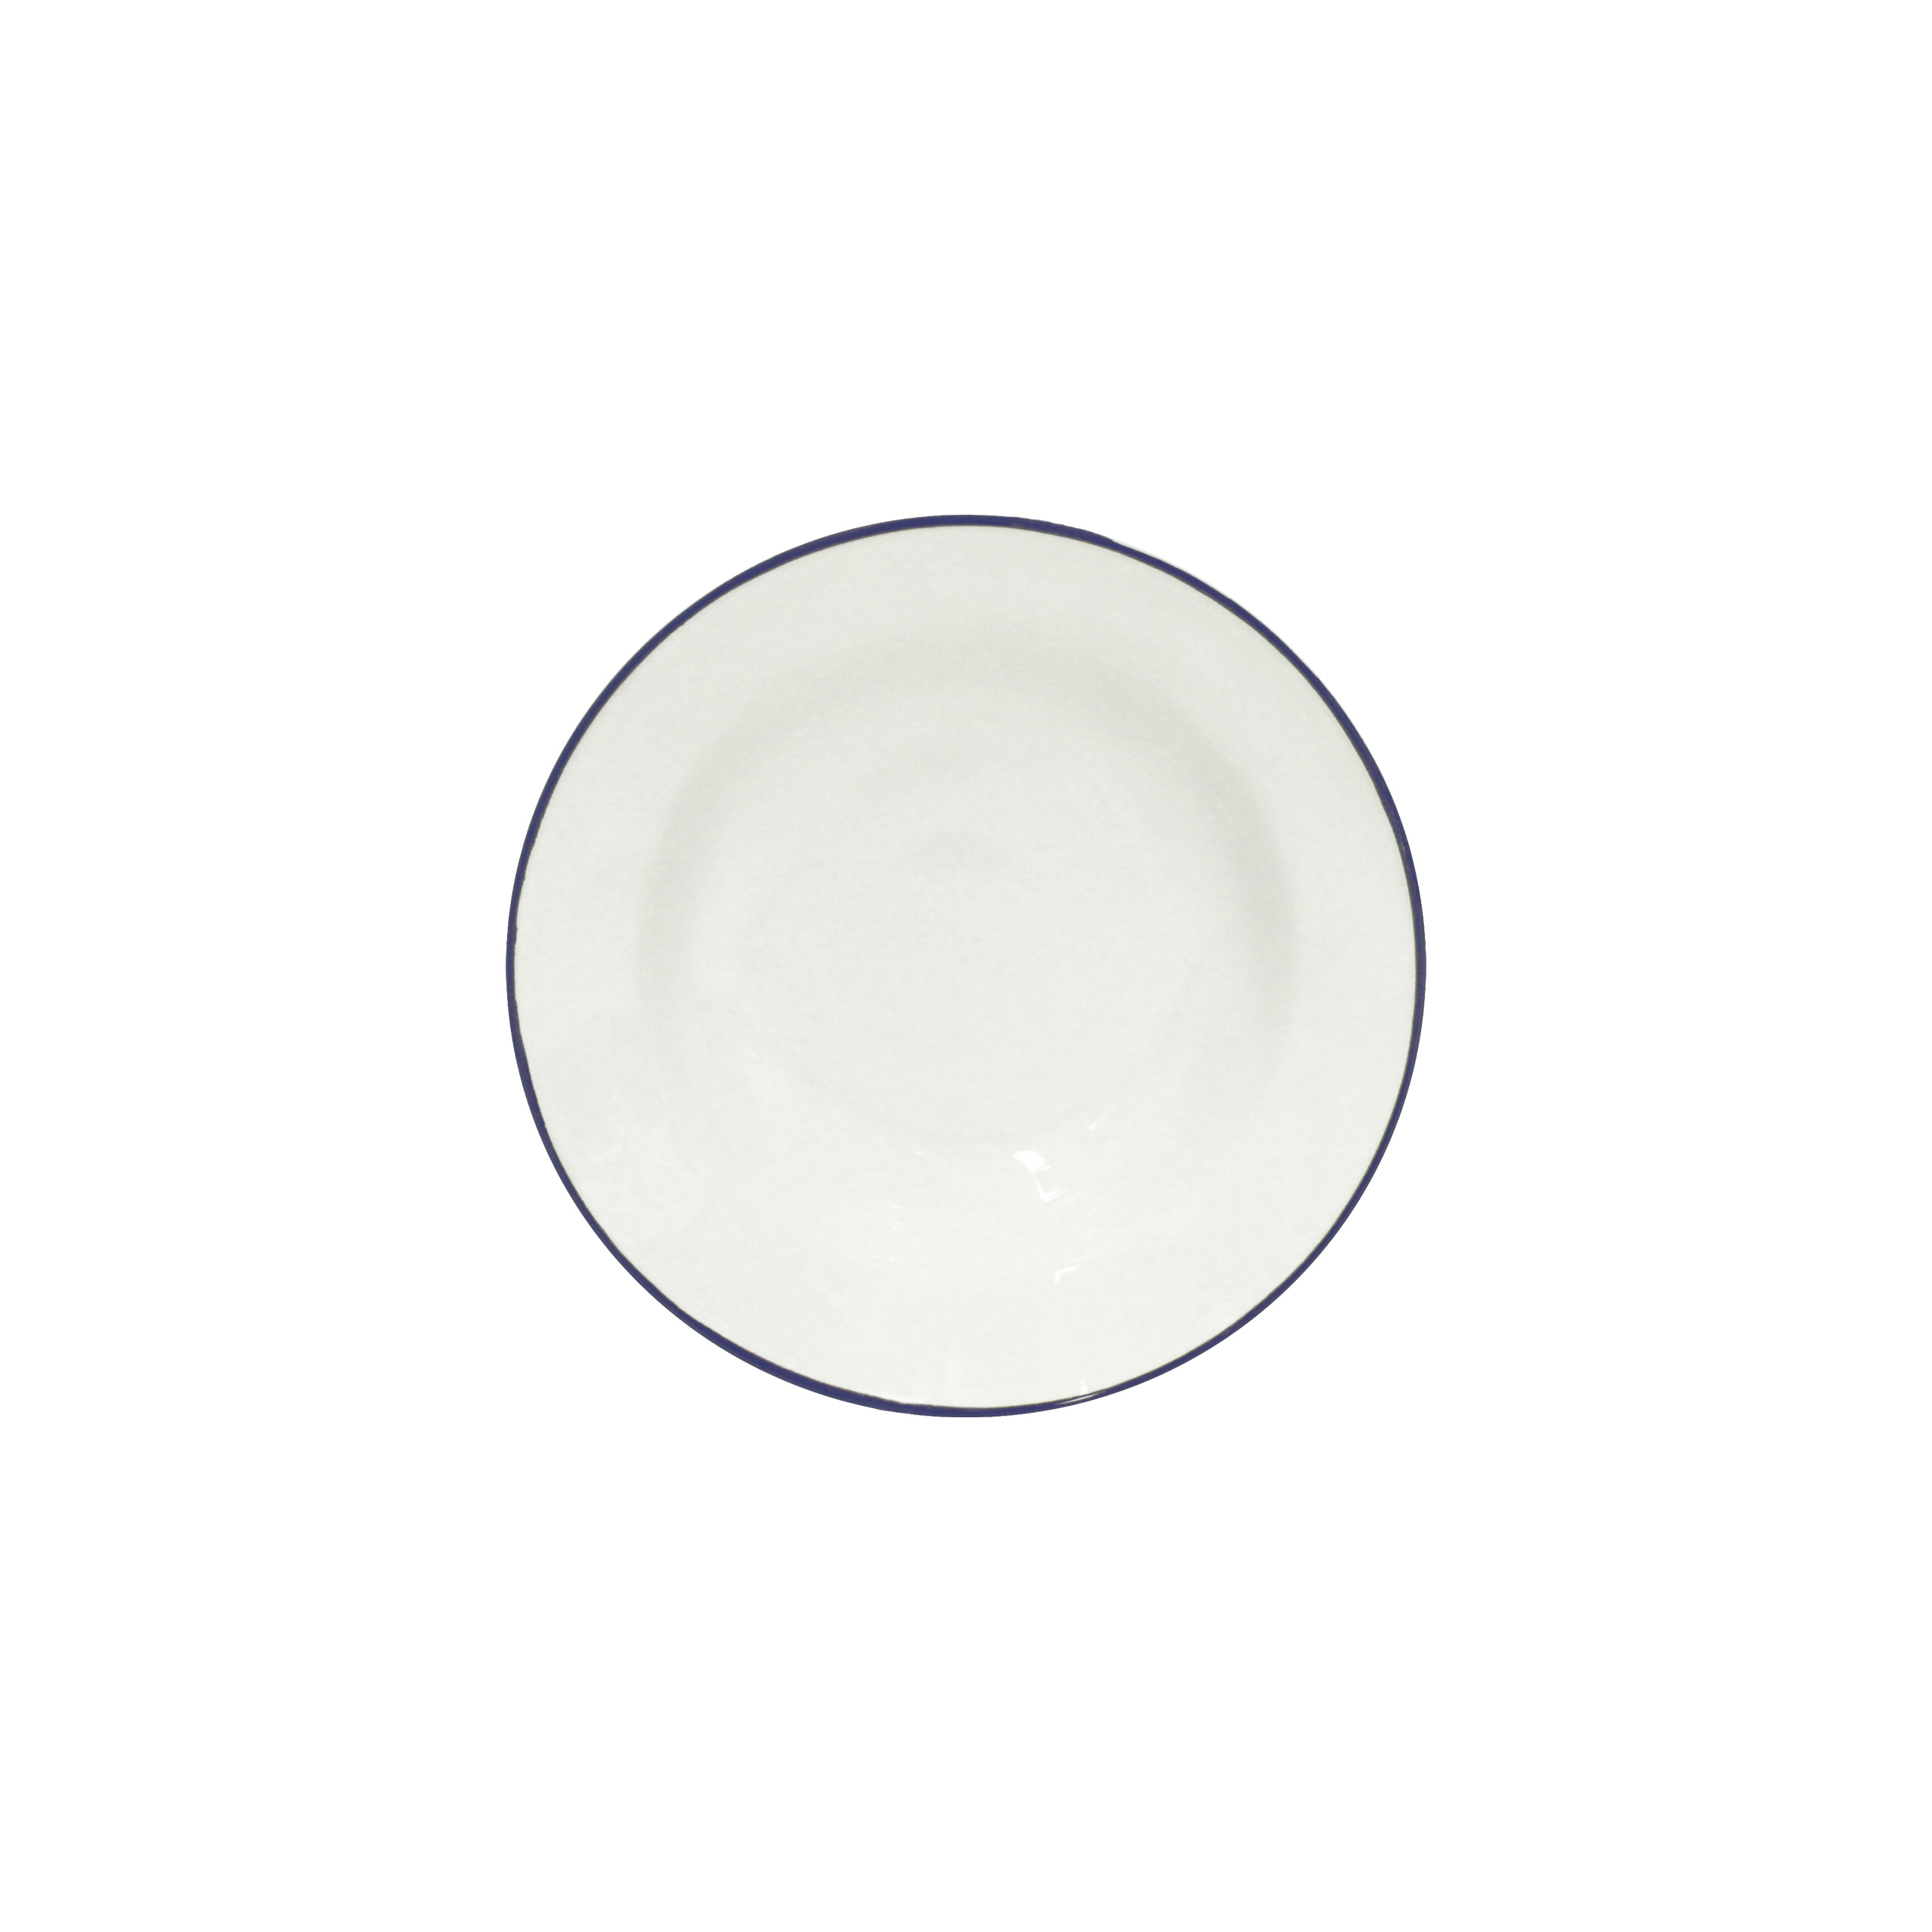 Beja White/blue Soup/pasta Plate 21cm Gift